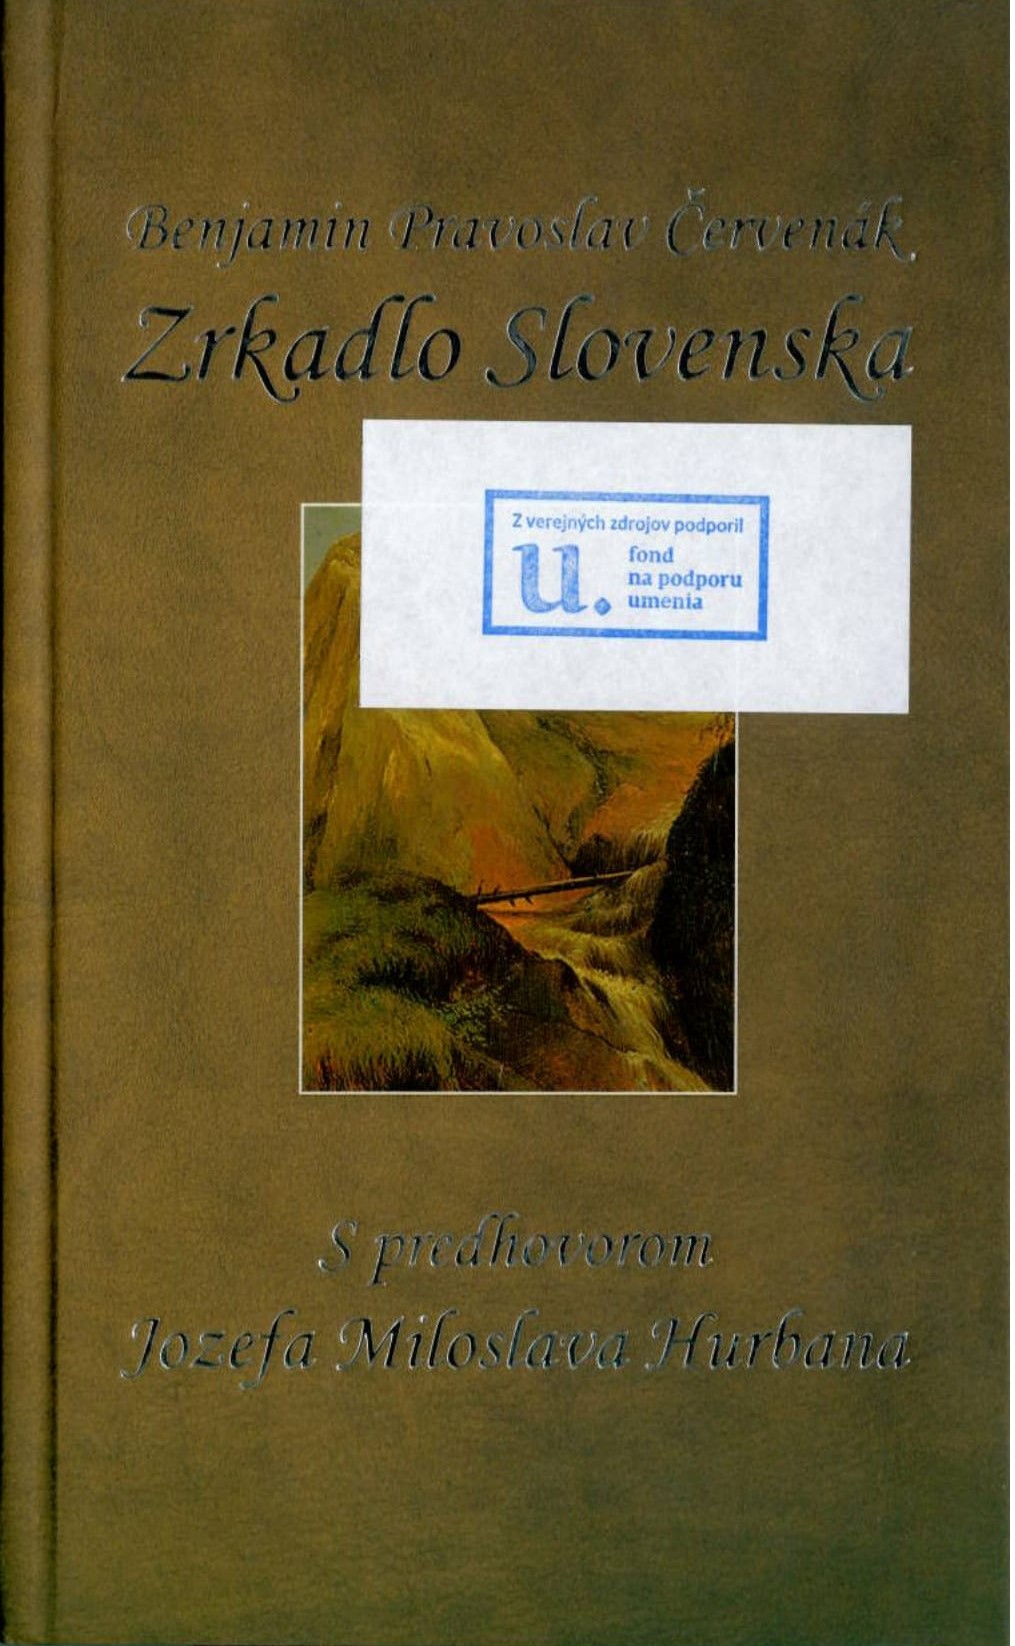 Zrkadlo Slovenska